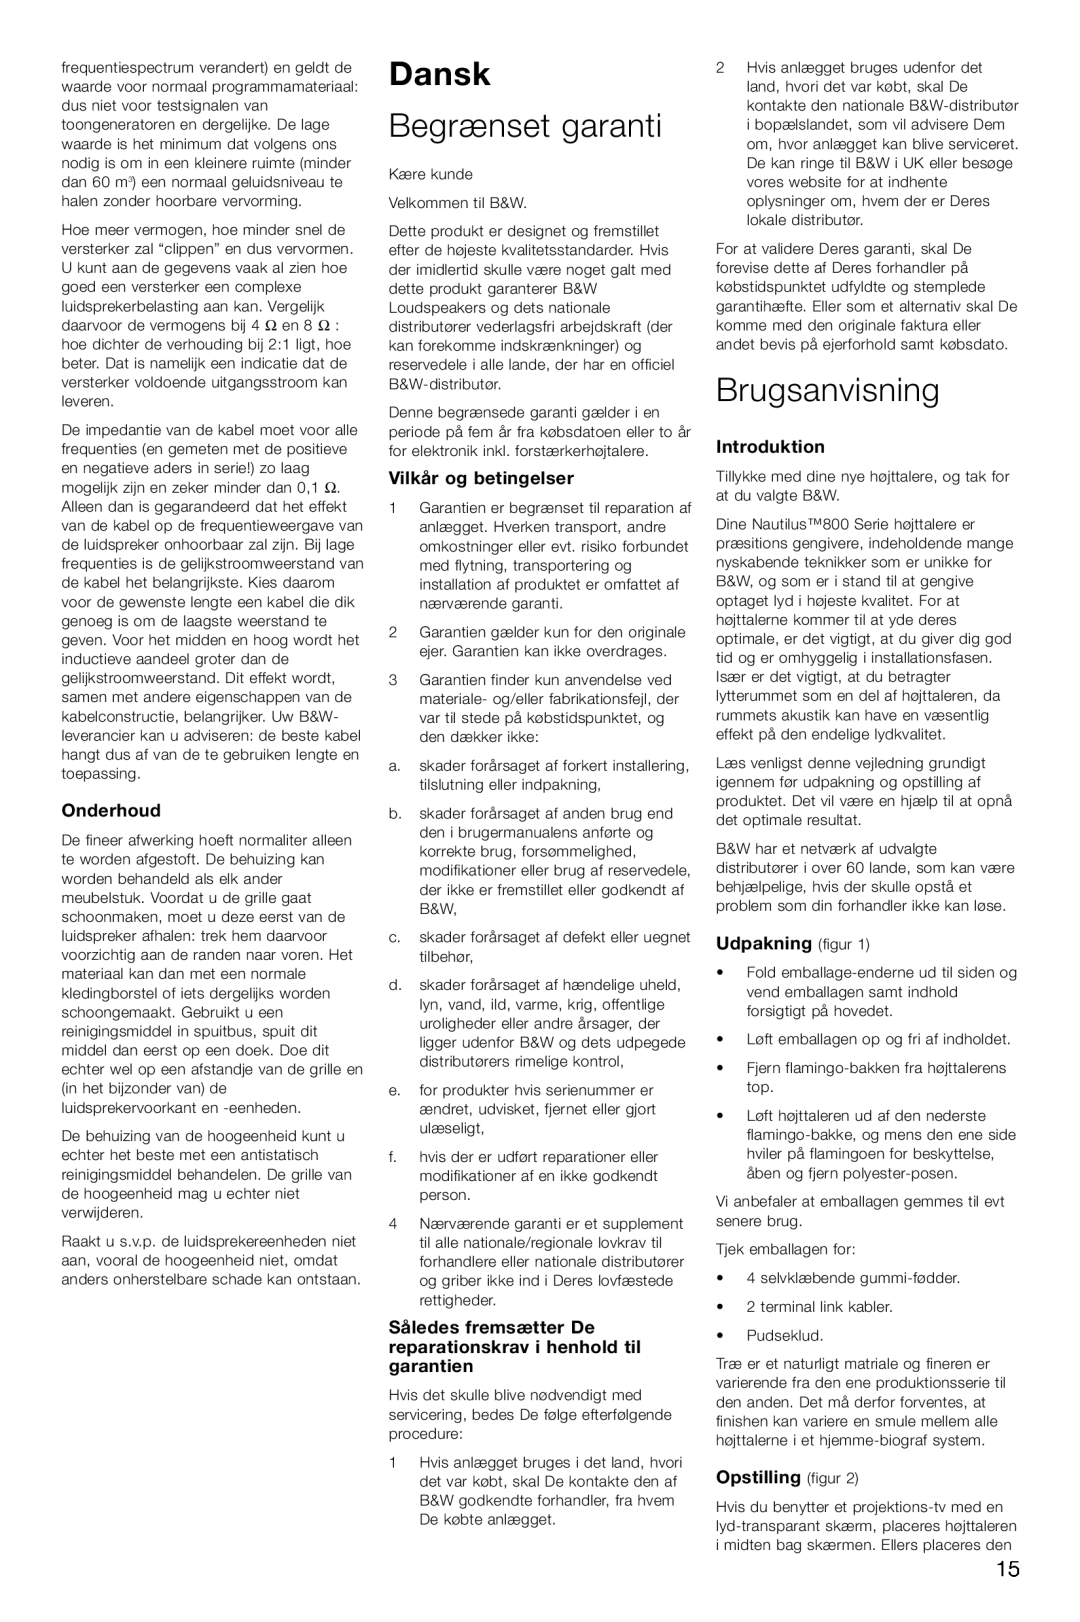 Bowers & Wilkins HTM1 owner manual Dansk, Begrænset garanti, Brugsanvisning, Onderhoud, Vilkår og betingelser, Introduktion 